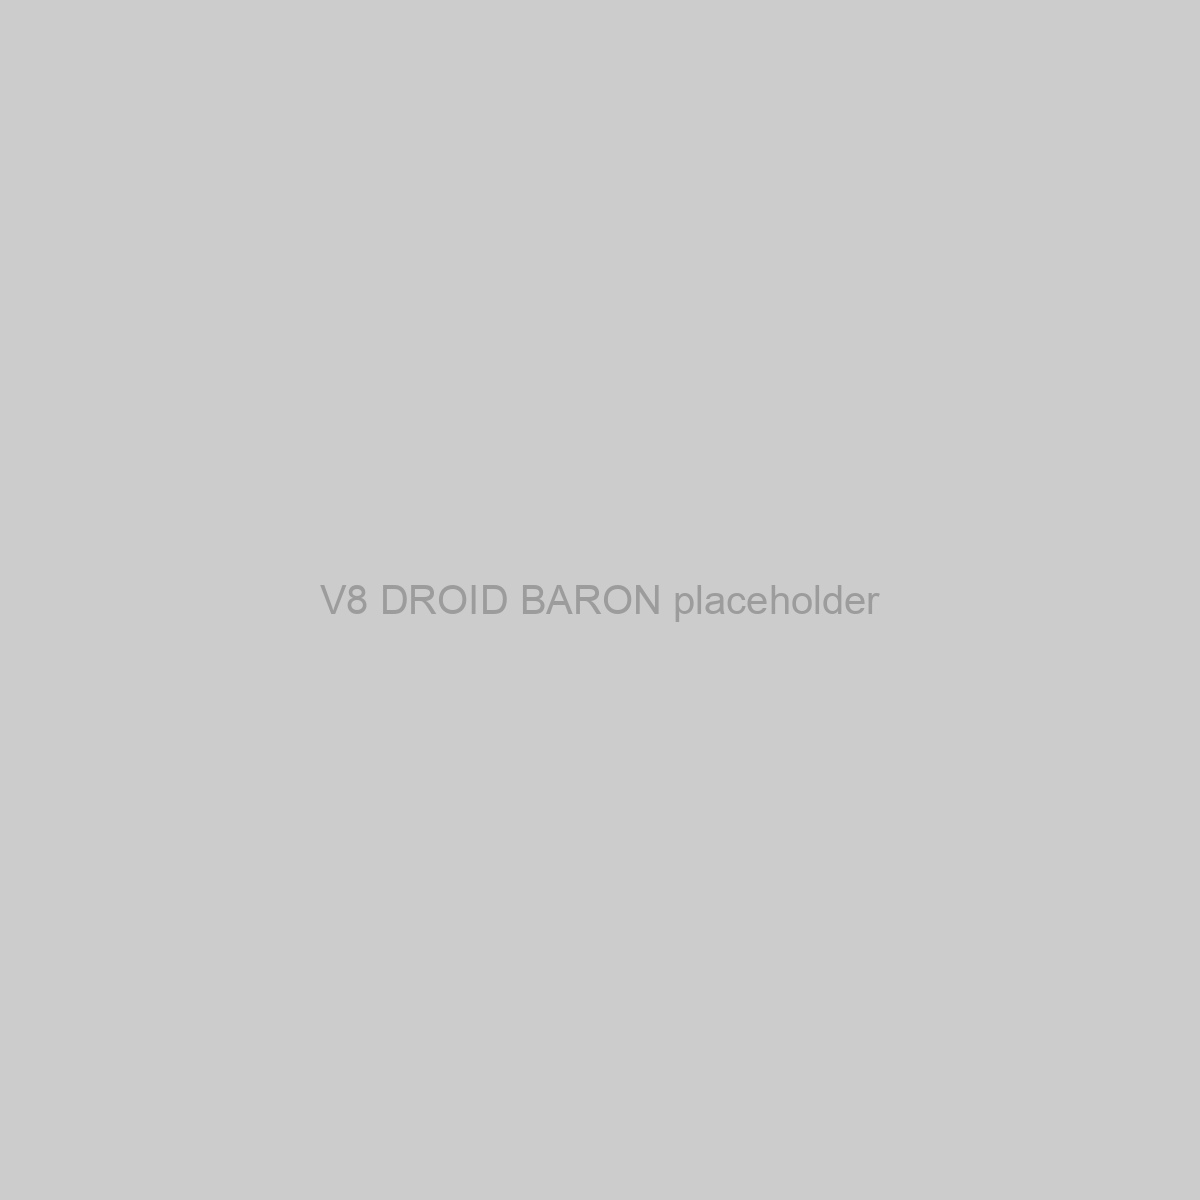 V8 DROID BARON Placeholder Image